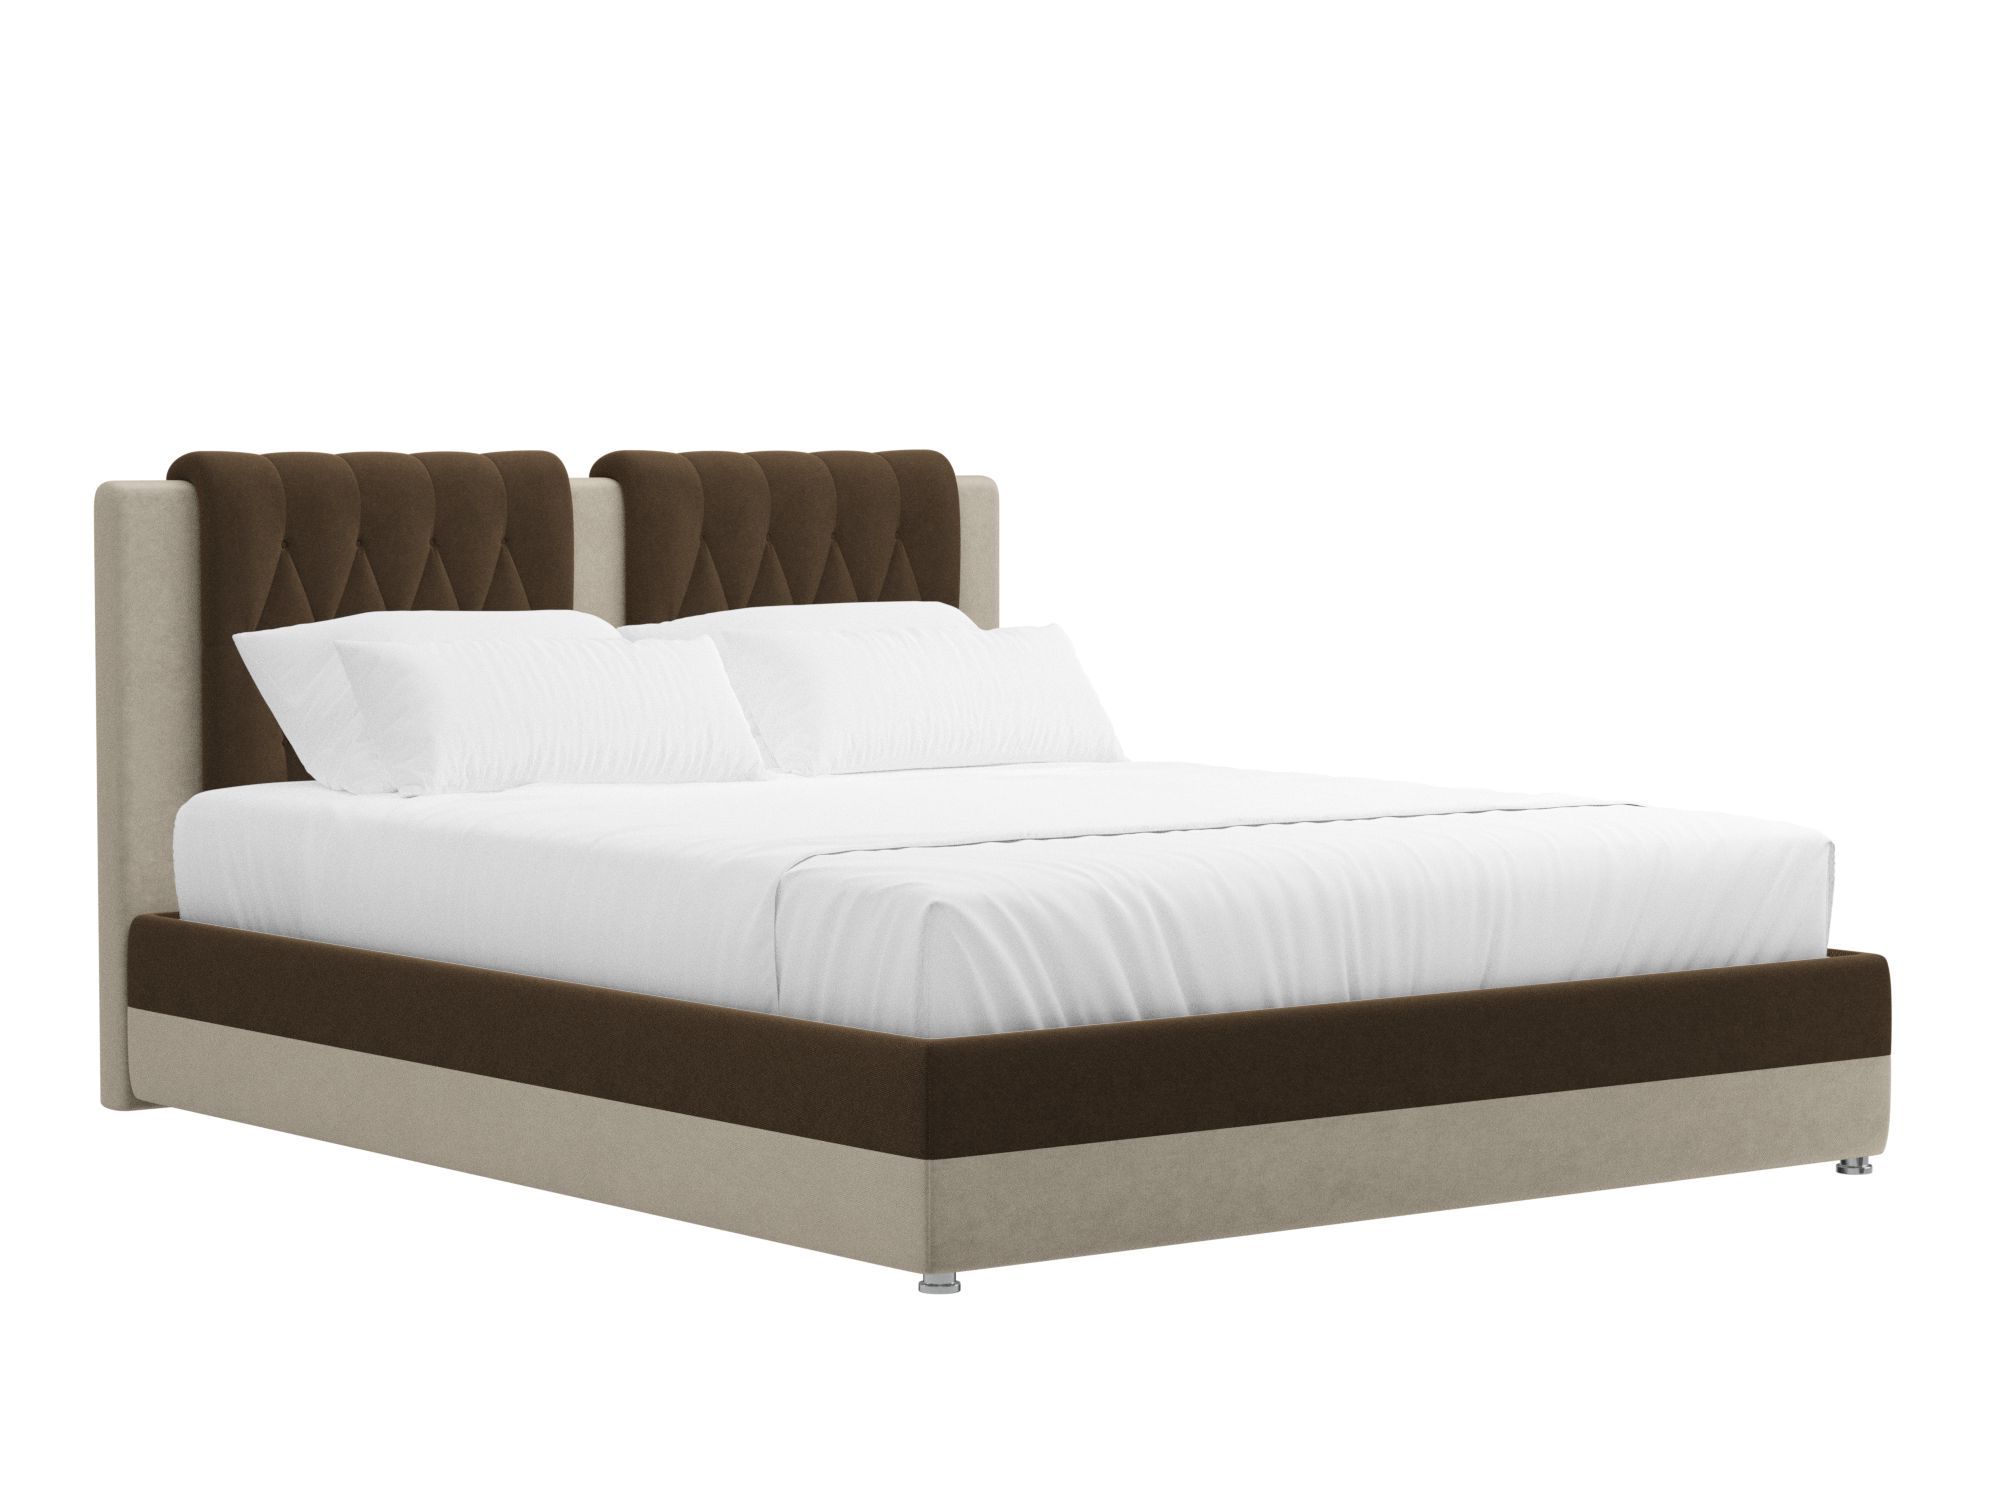 Кровать Камилла (160x200) Коричневый, Бежевый, ЛДСП кровать эконом 160х200 дуб белфорд бежевый коричневый темный лдсп